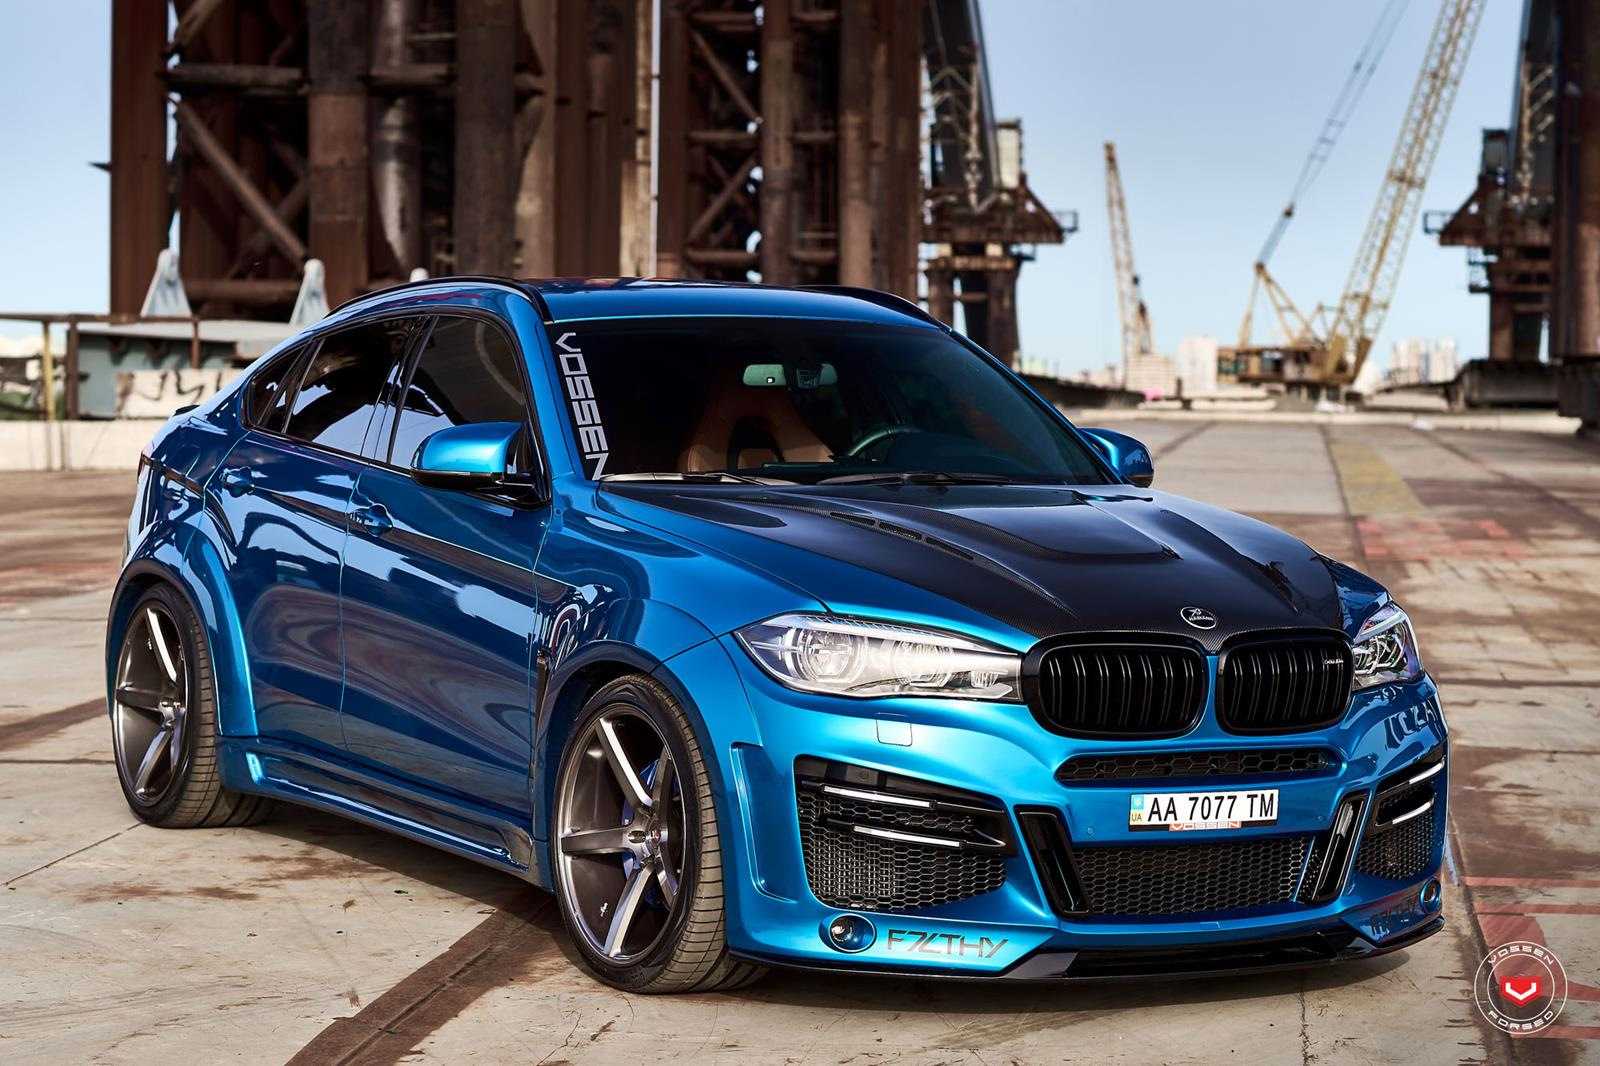 Ателье VOS Performance представило свой вариант заряженного купе BMW M2 Модификация от немецких тюнеров получила более агрессивный дизайн экстерьера, а